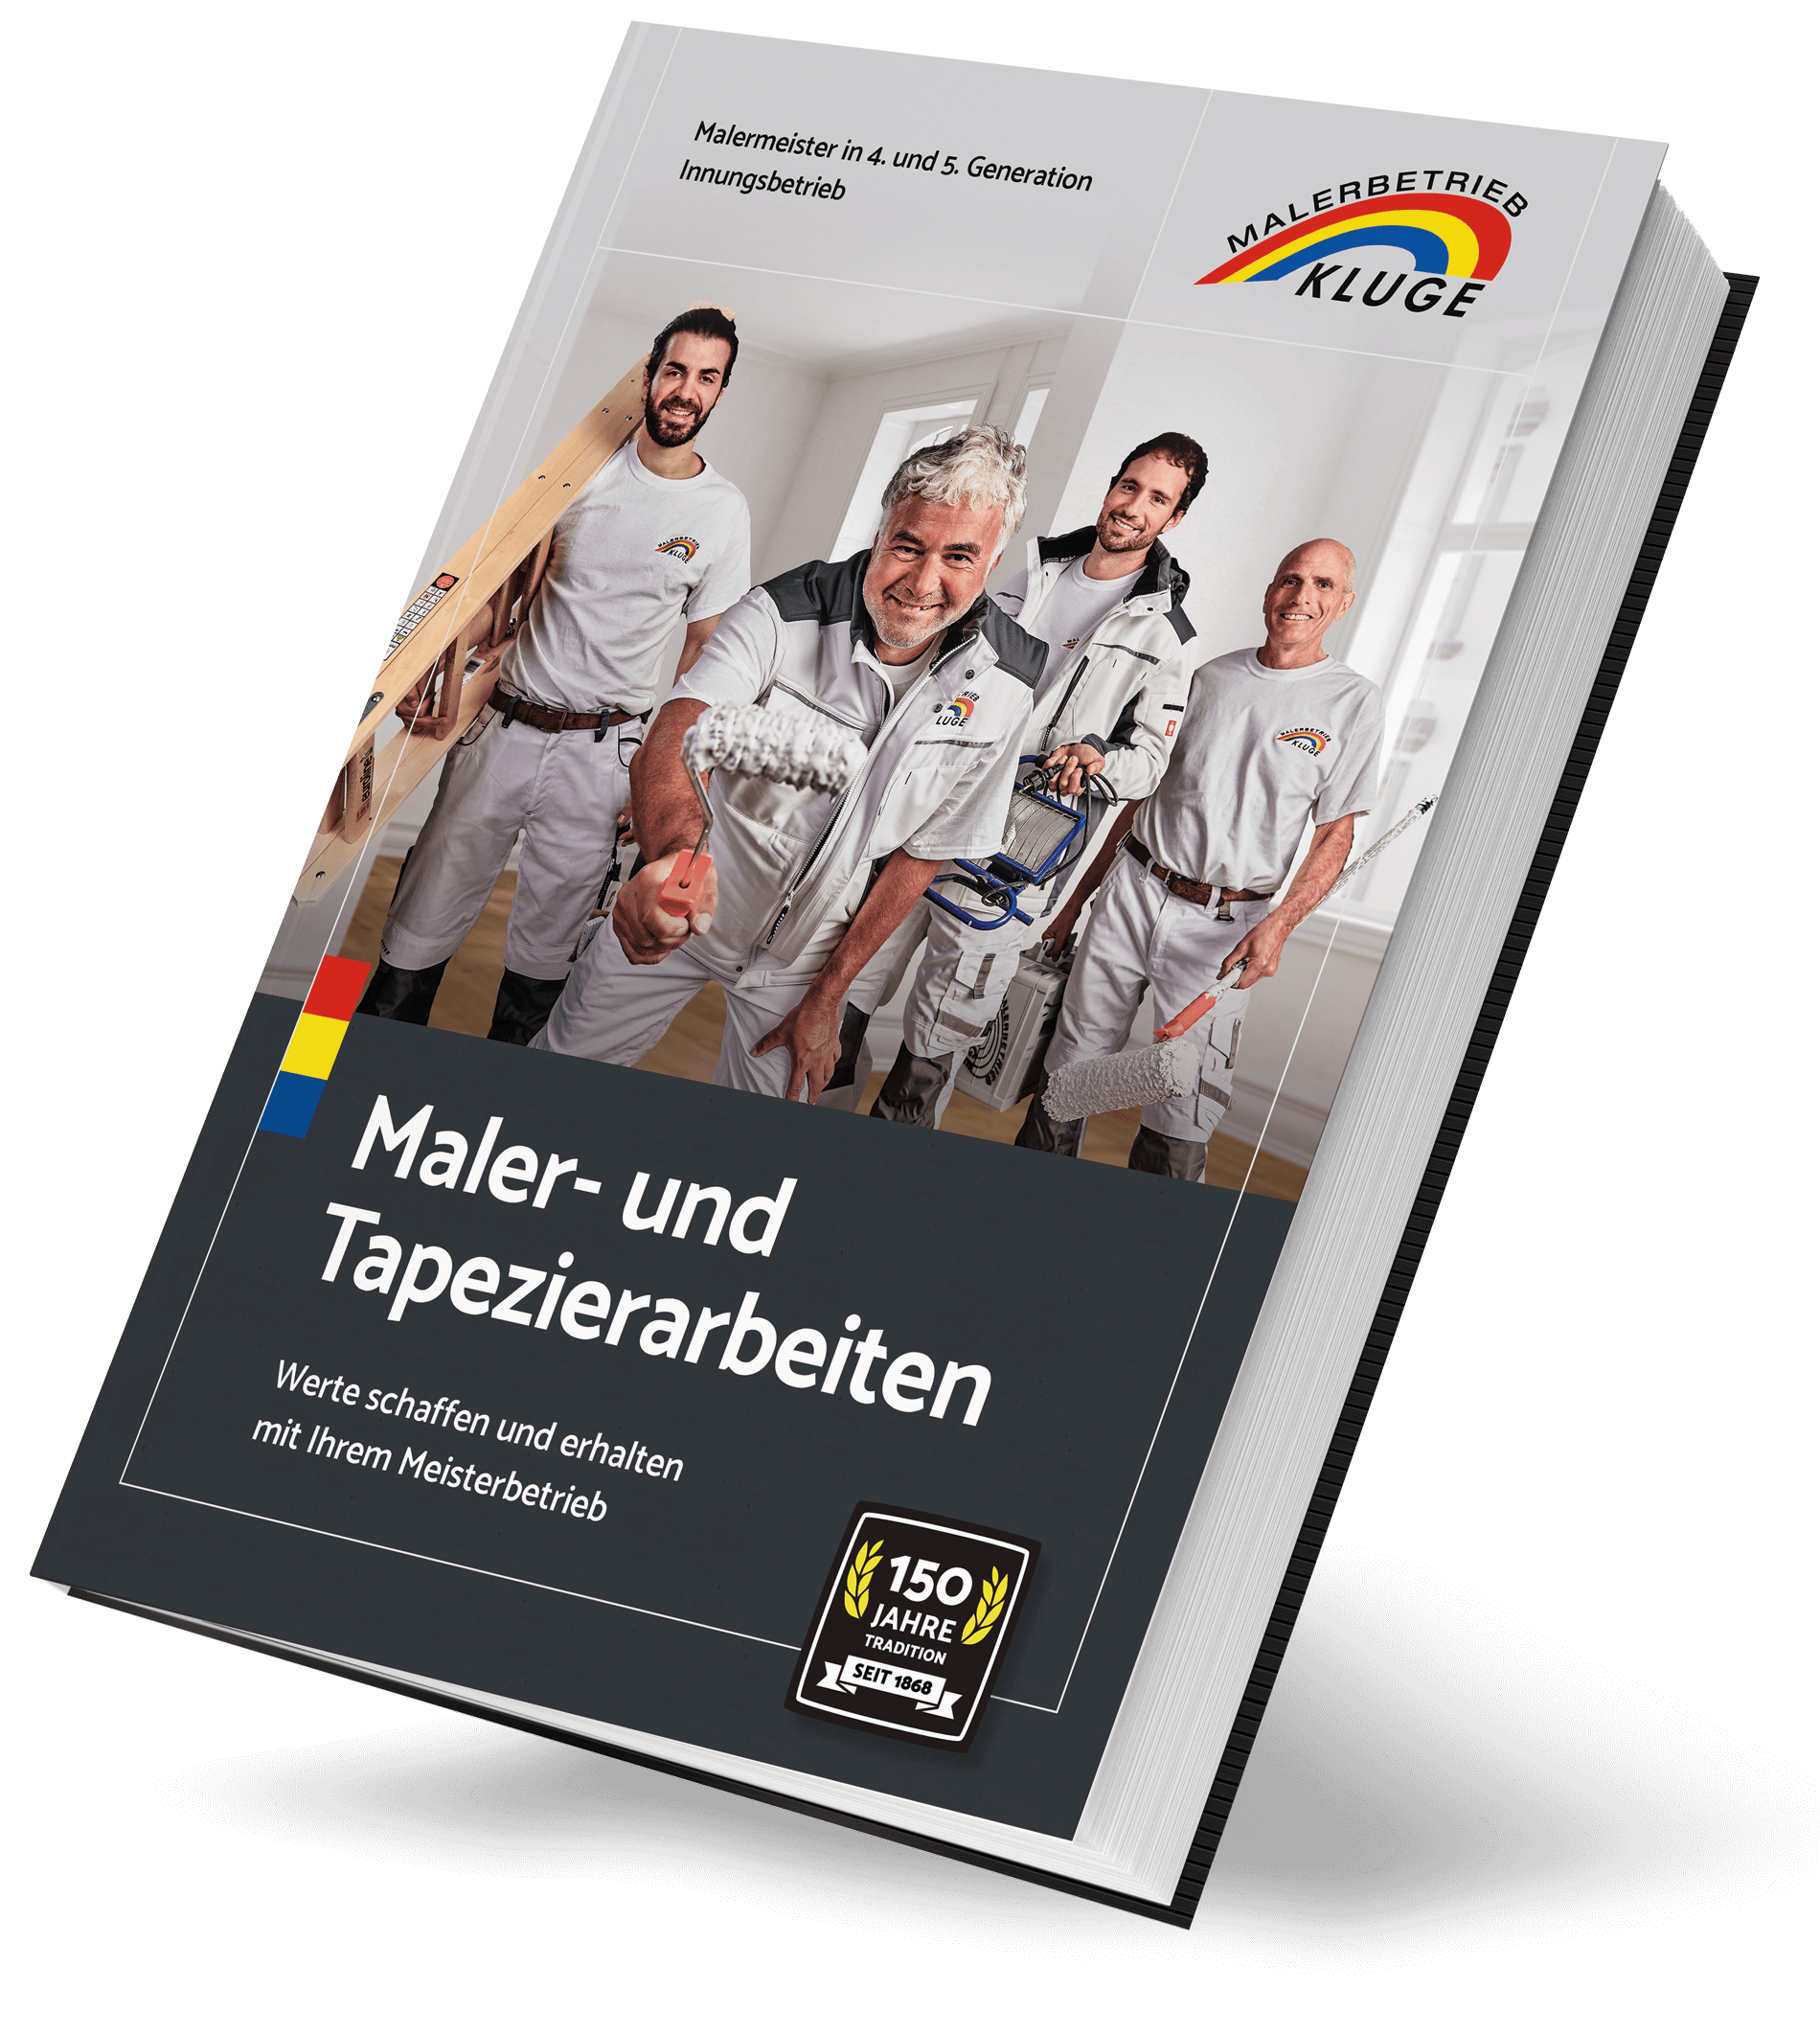 Malerbetrieb Kluge - Praxisbuch mit Praxisbeispielen und Referenzprojekten